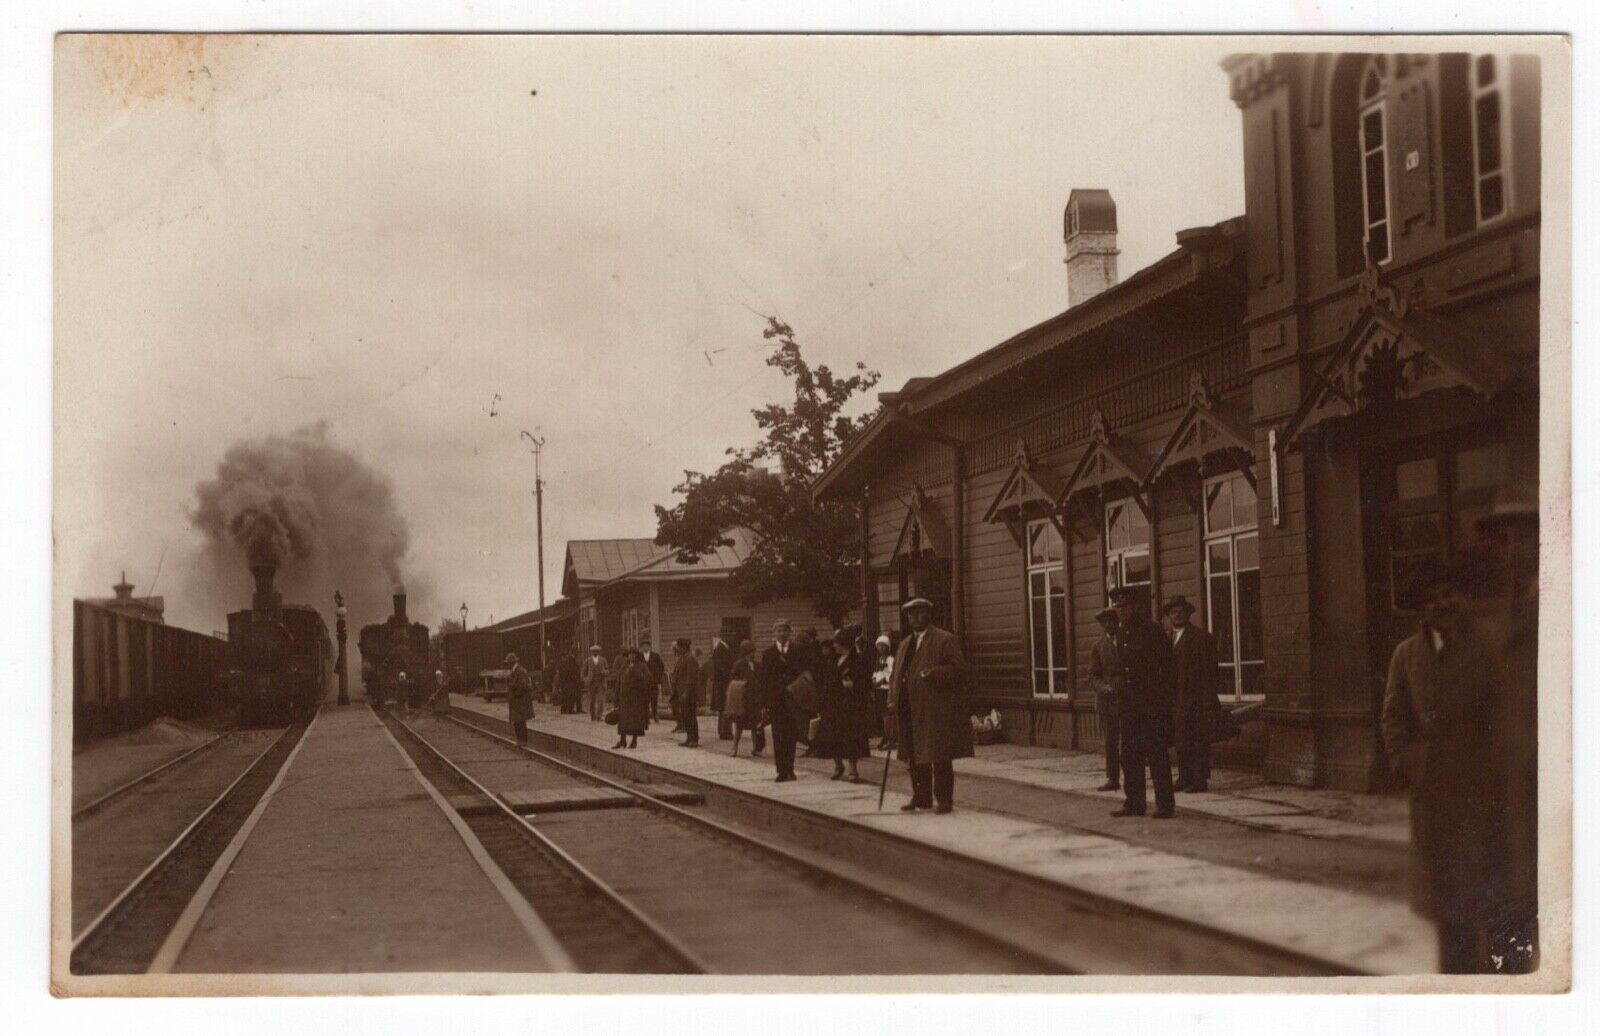 ESTONIA 1928 RAILWAY STATION PASSENGERS, EESTI RAKVERE RAUDTEEJAAM POSTALLY USED